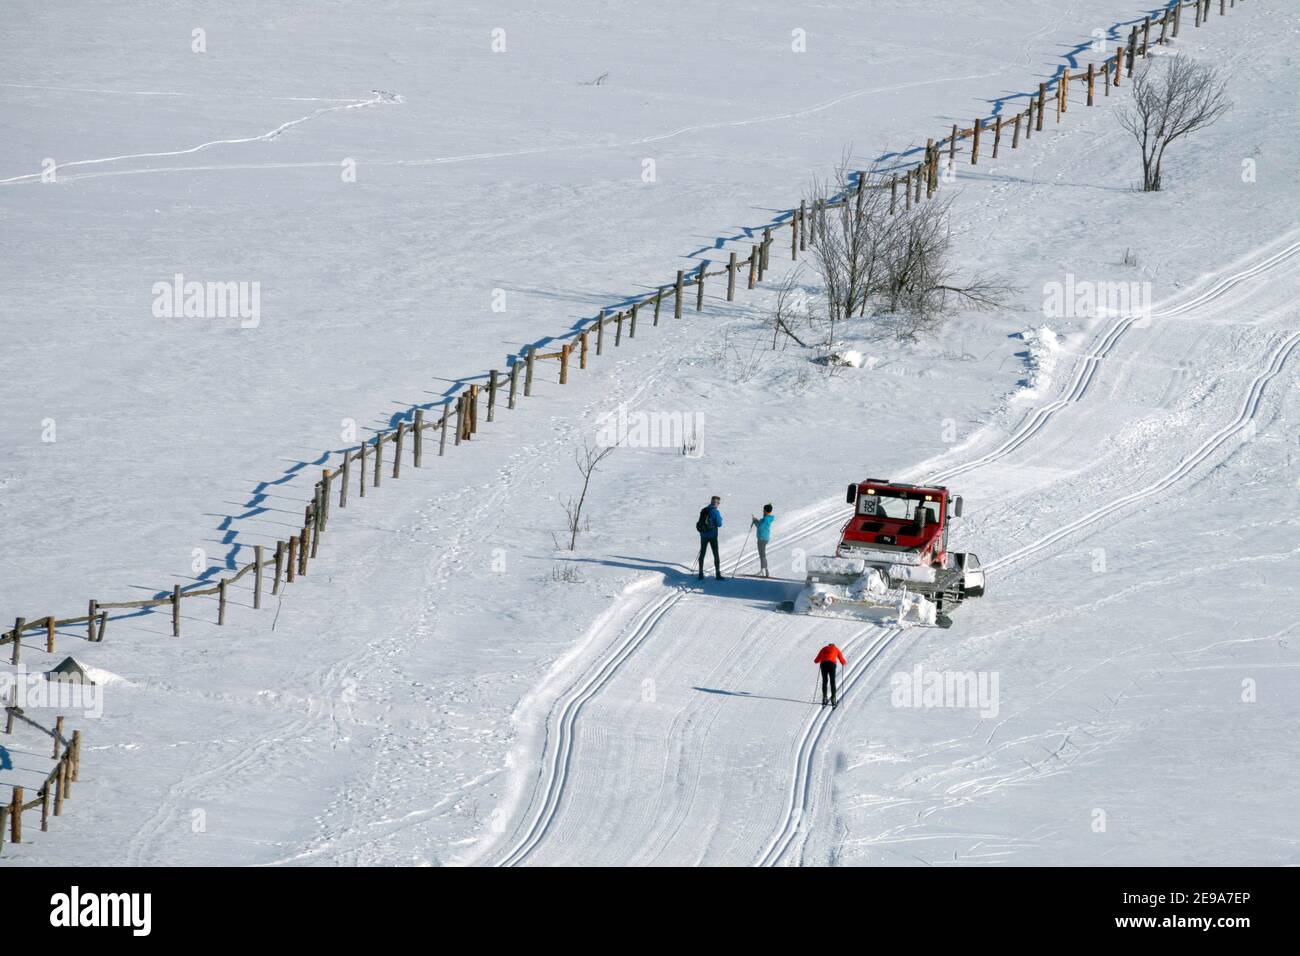 Pistenmaschine auf Langlaufloipe, Schneepflug auf Bergrücken Erzgebirge Tschechien Stockfoto